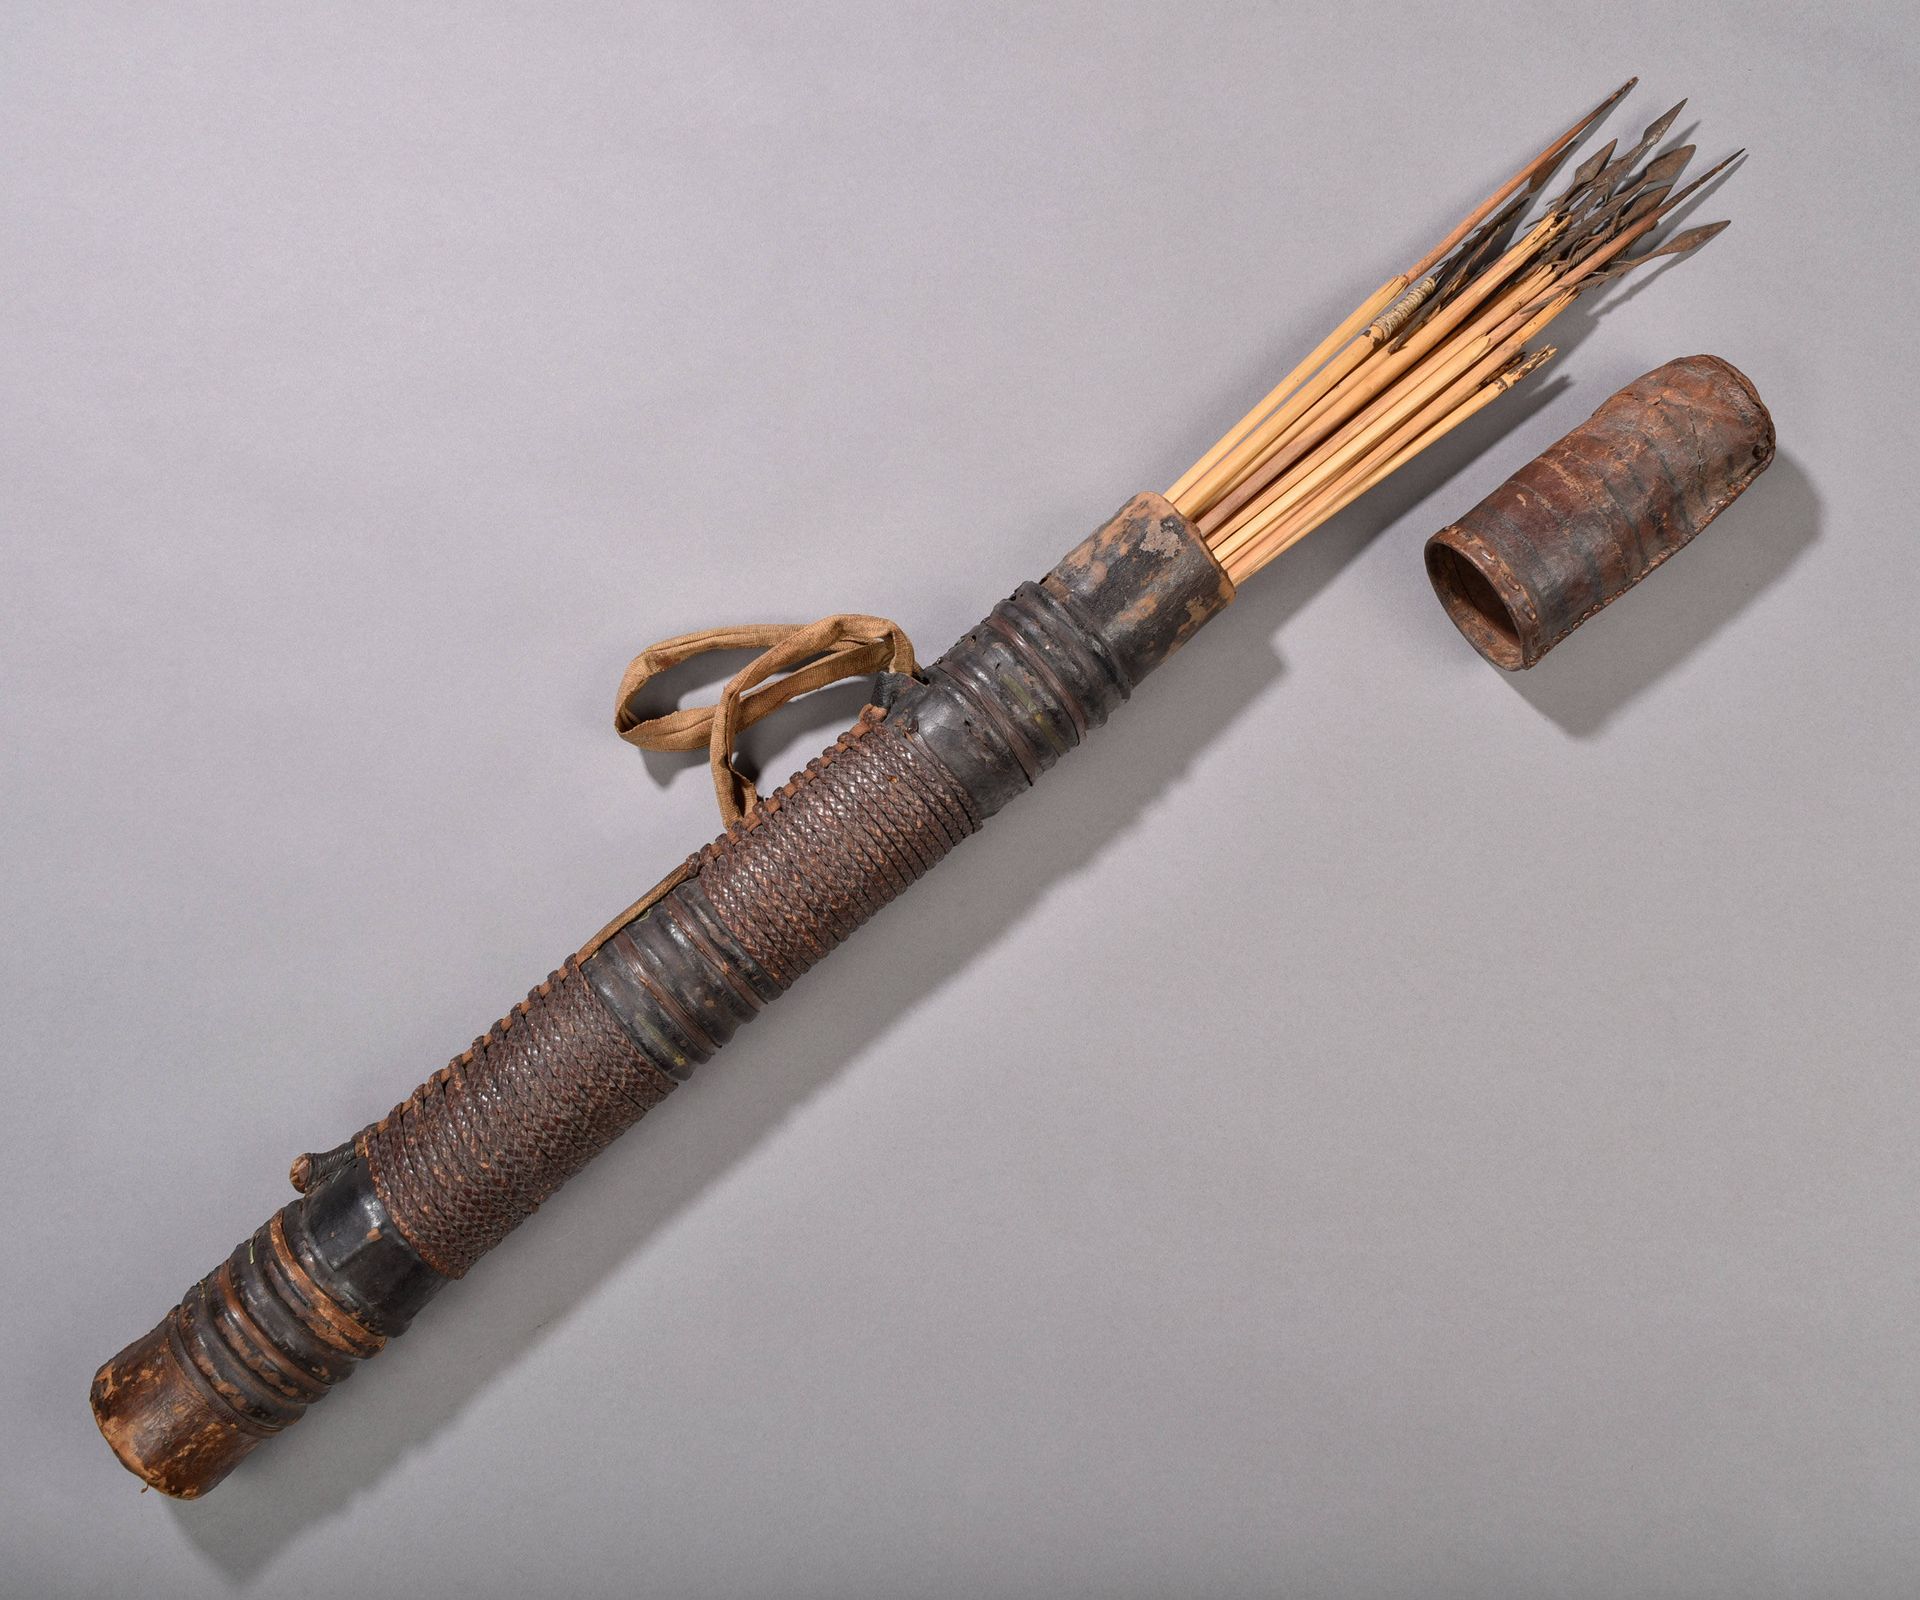 A Pygmy Quiver with Arrows Carcaj con flechas

Pigmeos, África Central

Ohne Soc&hellip;